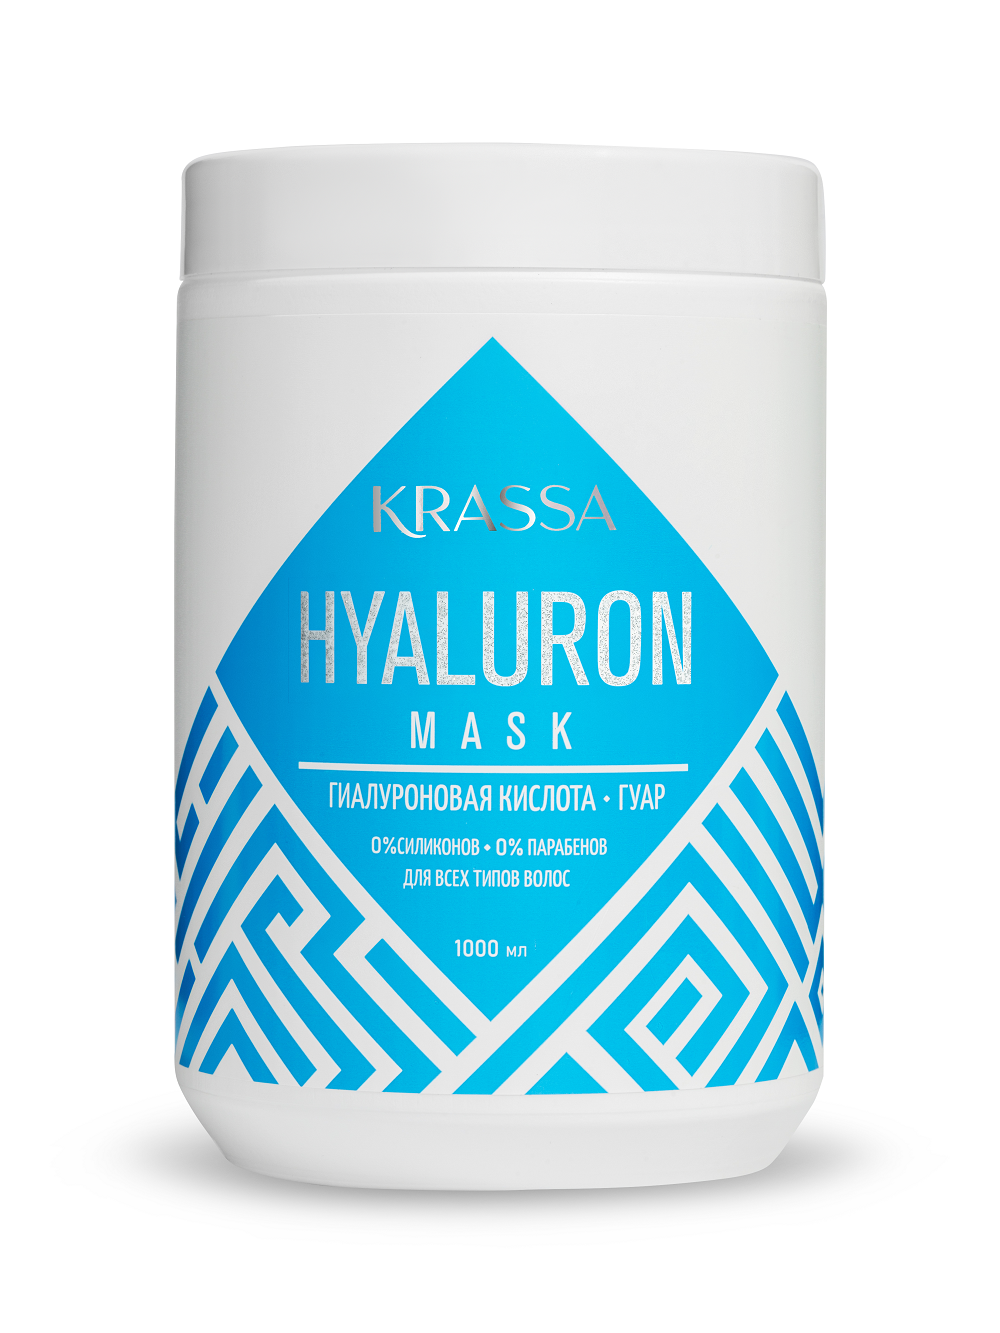 Купить Маска для волос KRASSA с гиалуроновой кислотой Hyaluron , 1000 мл, KRASSA Professional